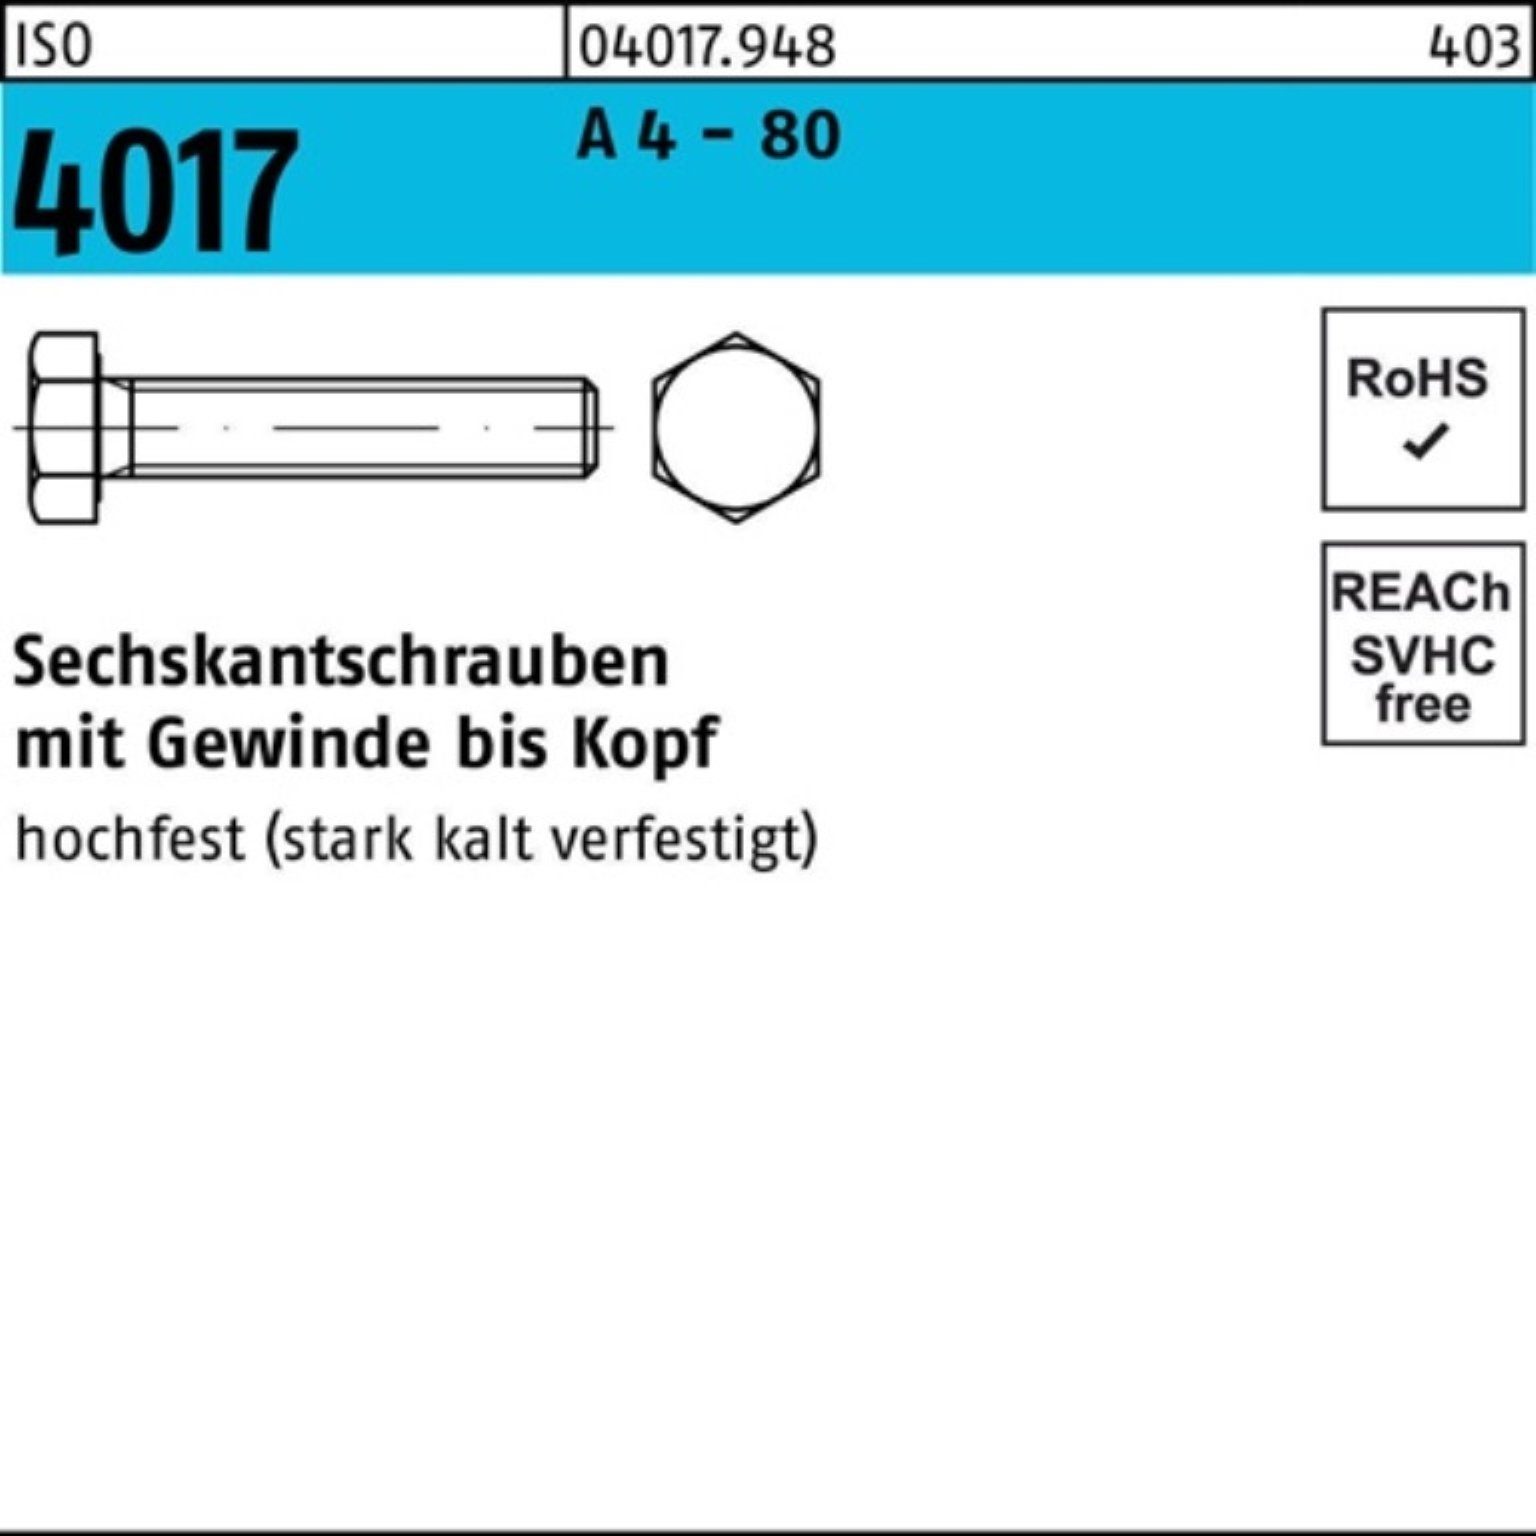 ISO IS 80 VG A M8x - Stück 4017 Bufab Pack 100er 40 Sechskantschraube 4 100 Sechskantschraube